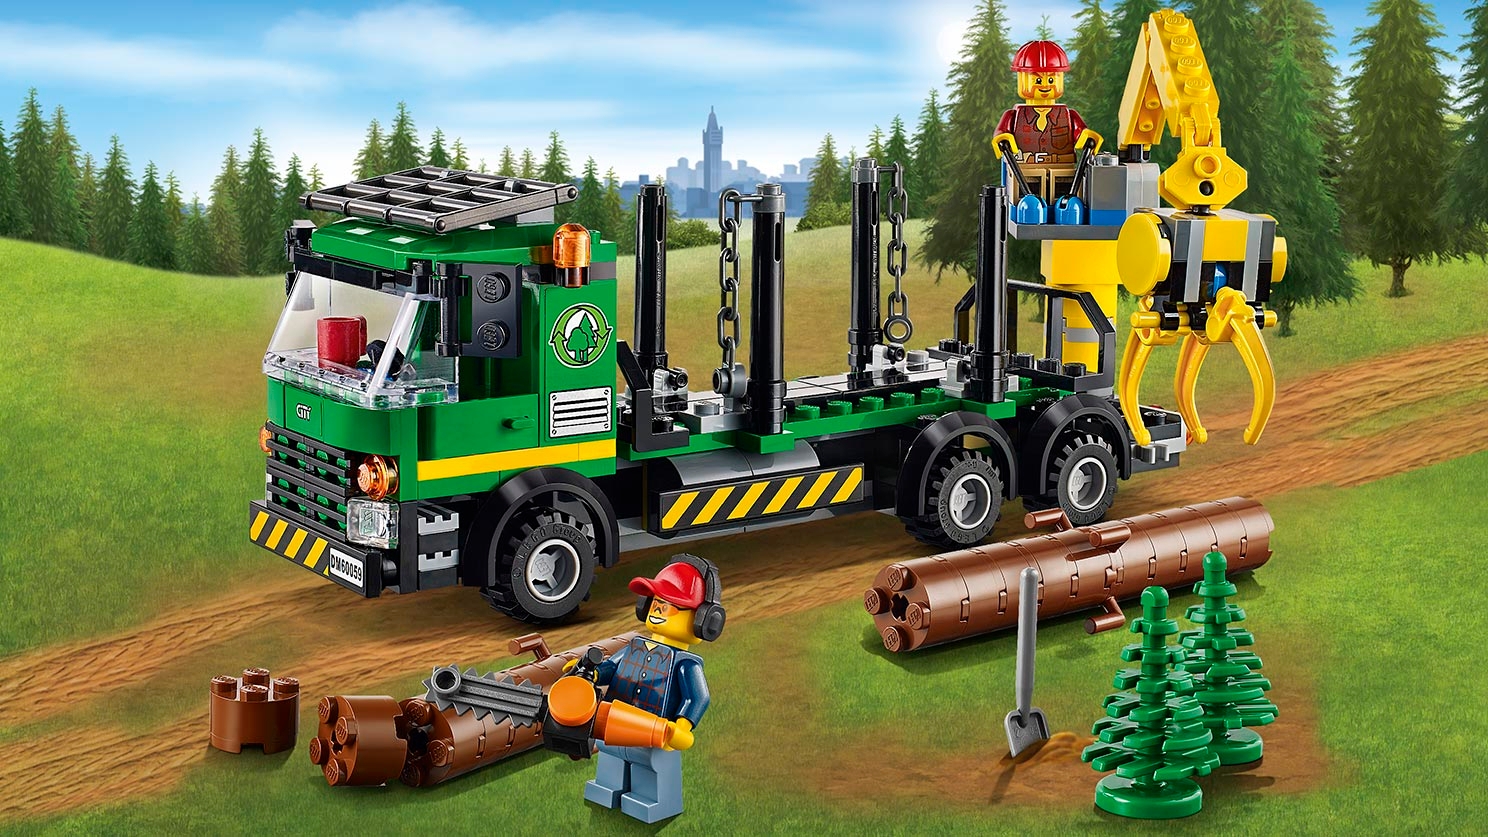 Logging Truck - LEGO® City Sets - LEGO.com for kids